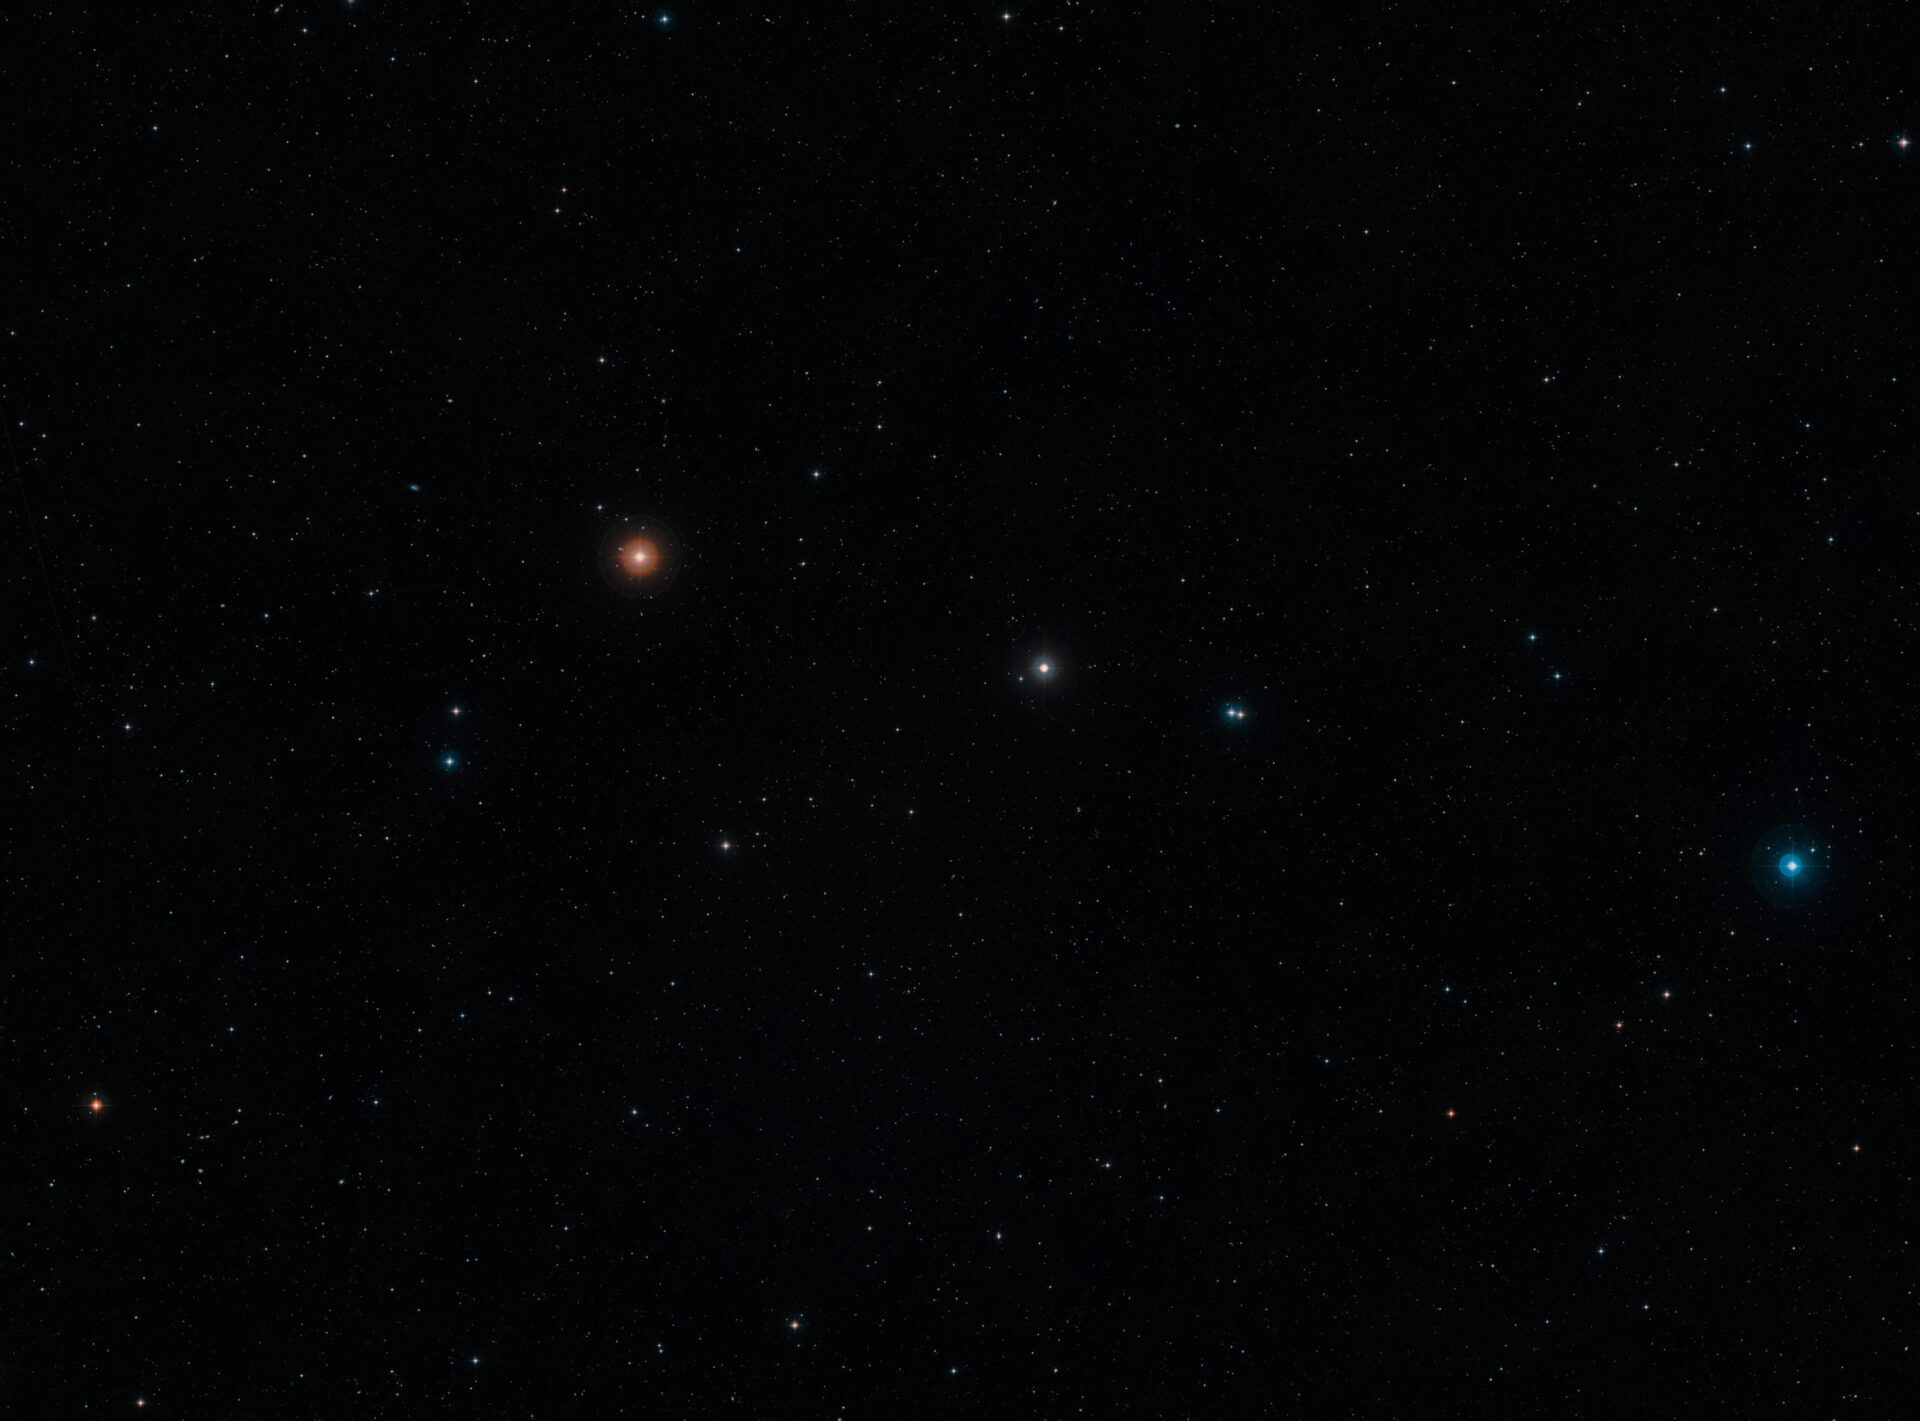 <p>Esta imagen de campo amplio en luz visible de la región del cielo donde se encuentra la remota galaxia NGP-190387 se creó a partir de imágenes del Digital Sky Survey 2. La galaxia, situada tan lejos que su luz tardó más de 12 mil millones de años en llegar hasta nosotros, está cerca del centro de la imagen. Aunque no pueden verse en esta imagen, muchas galaxias más cercanas se pueden observar con una vista de campo amplio.<br />
Crédito: ESO/Digitized Sky Survey 2. Acknowledgement: Davide De Martin</p>
